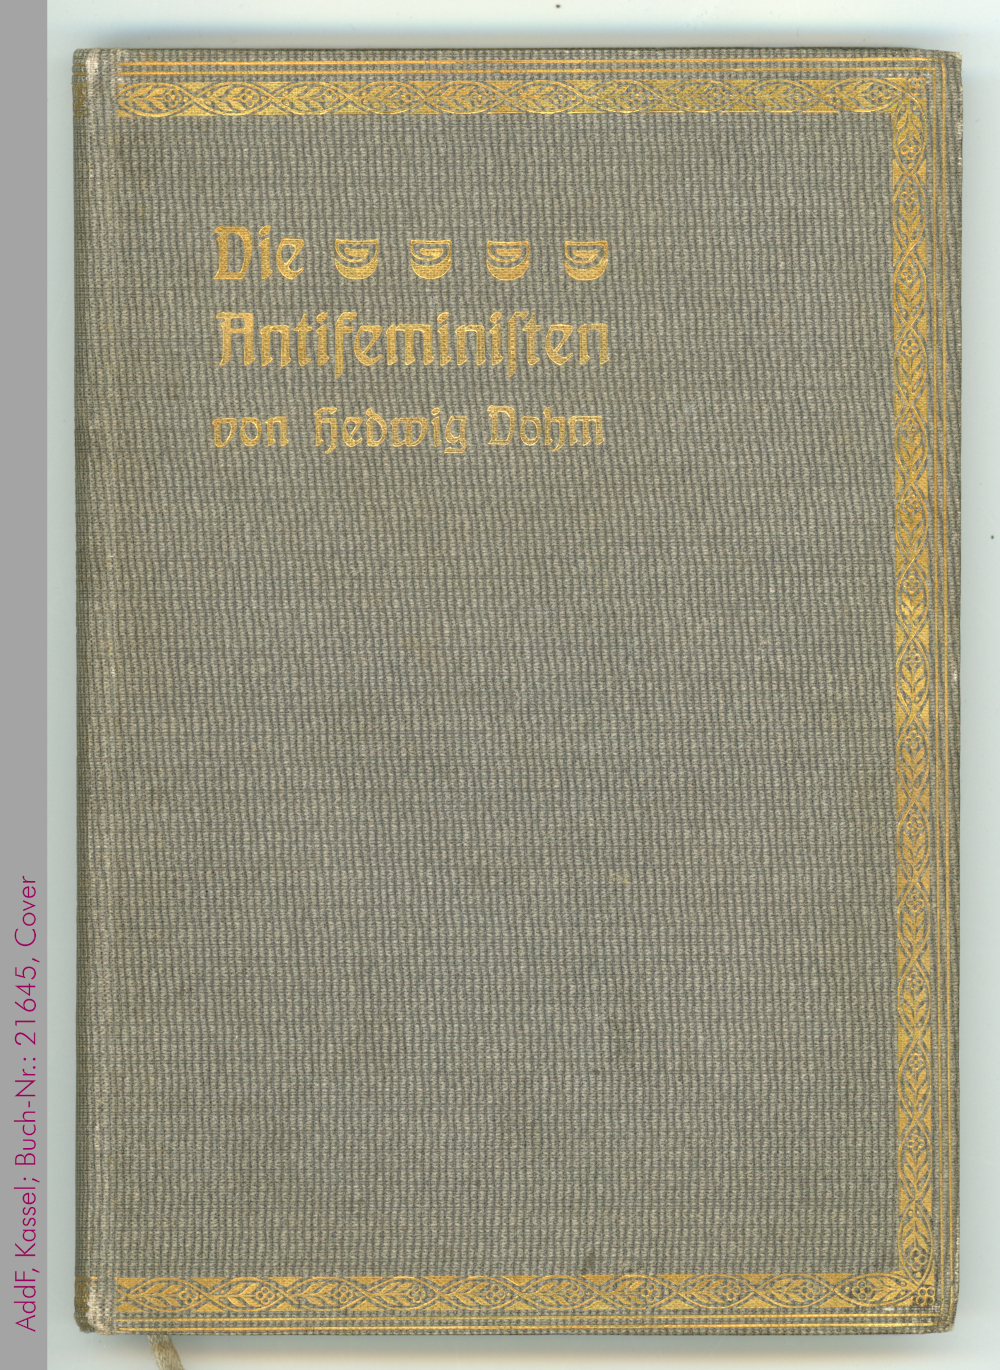 Buchcover "Die Antifeministen" von Hedwig Dohm